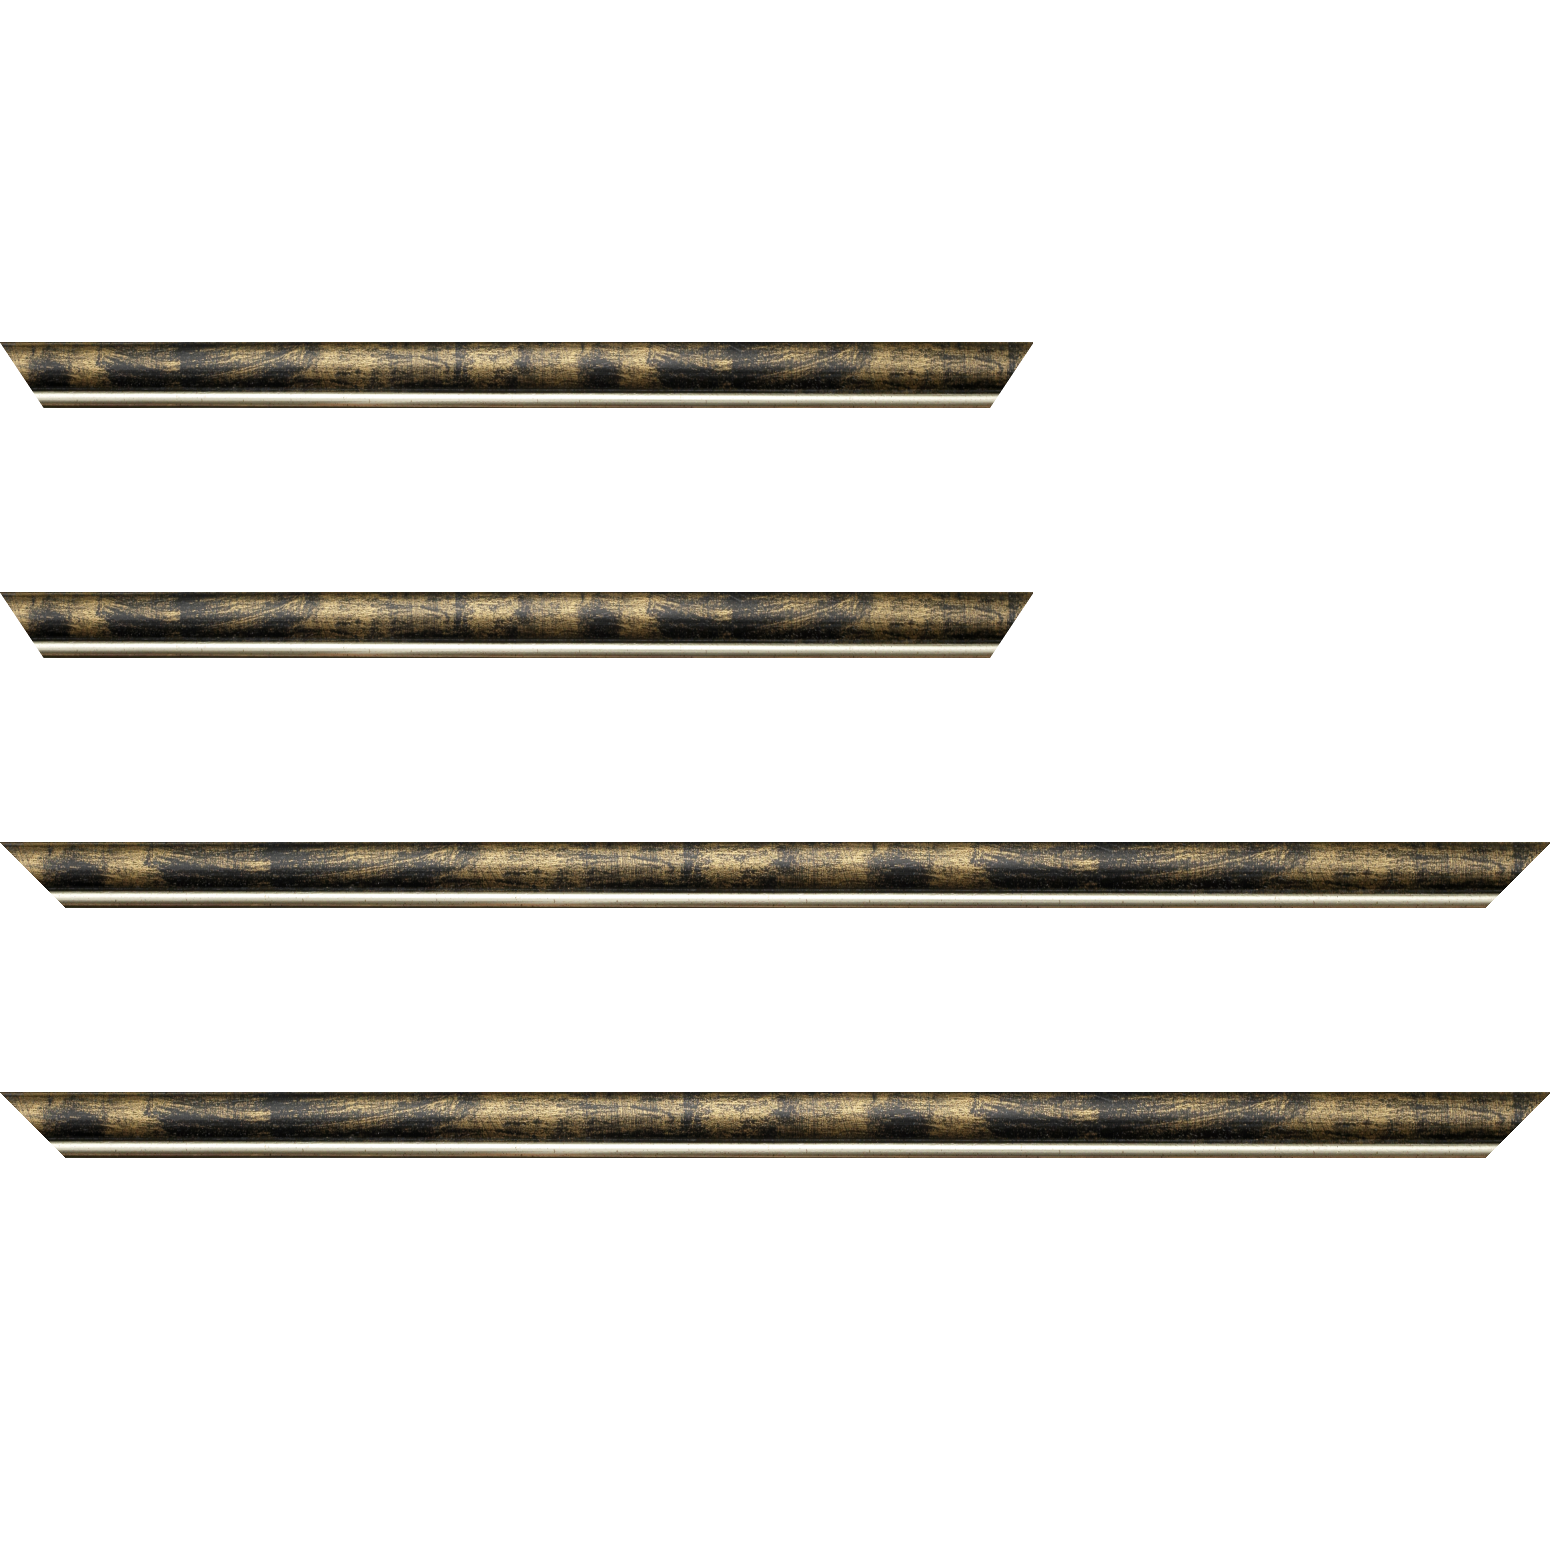 Baguette bois profil arrondi largeur 2.1cm  couleur noir fond or filet argent chaud - 34x40